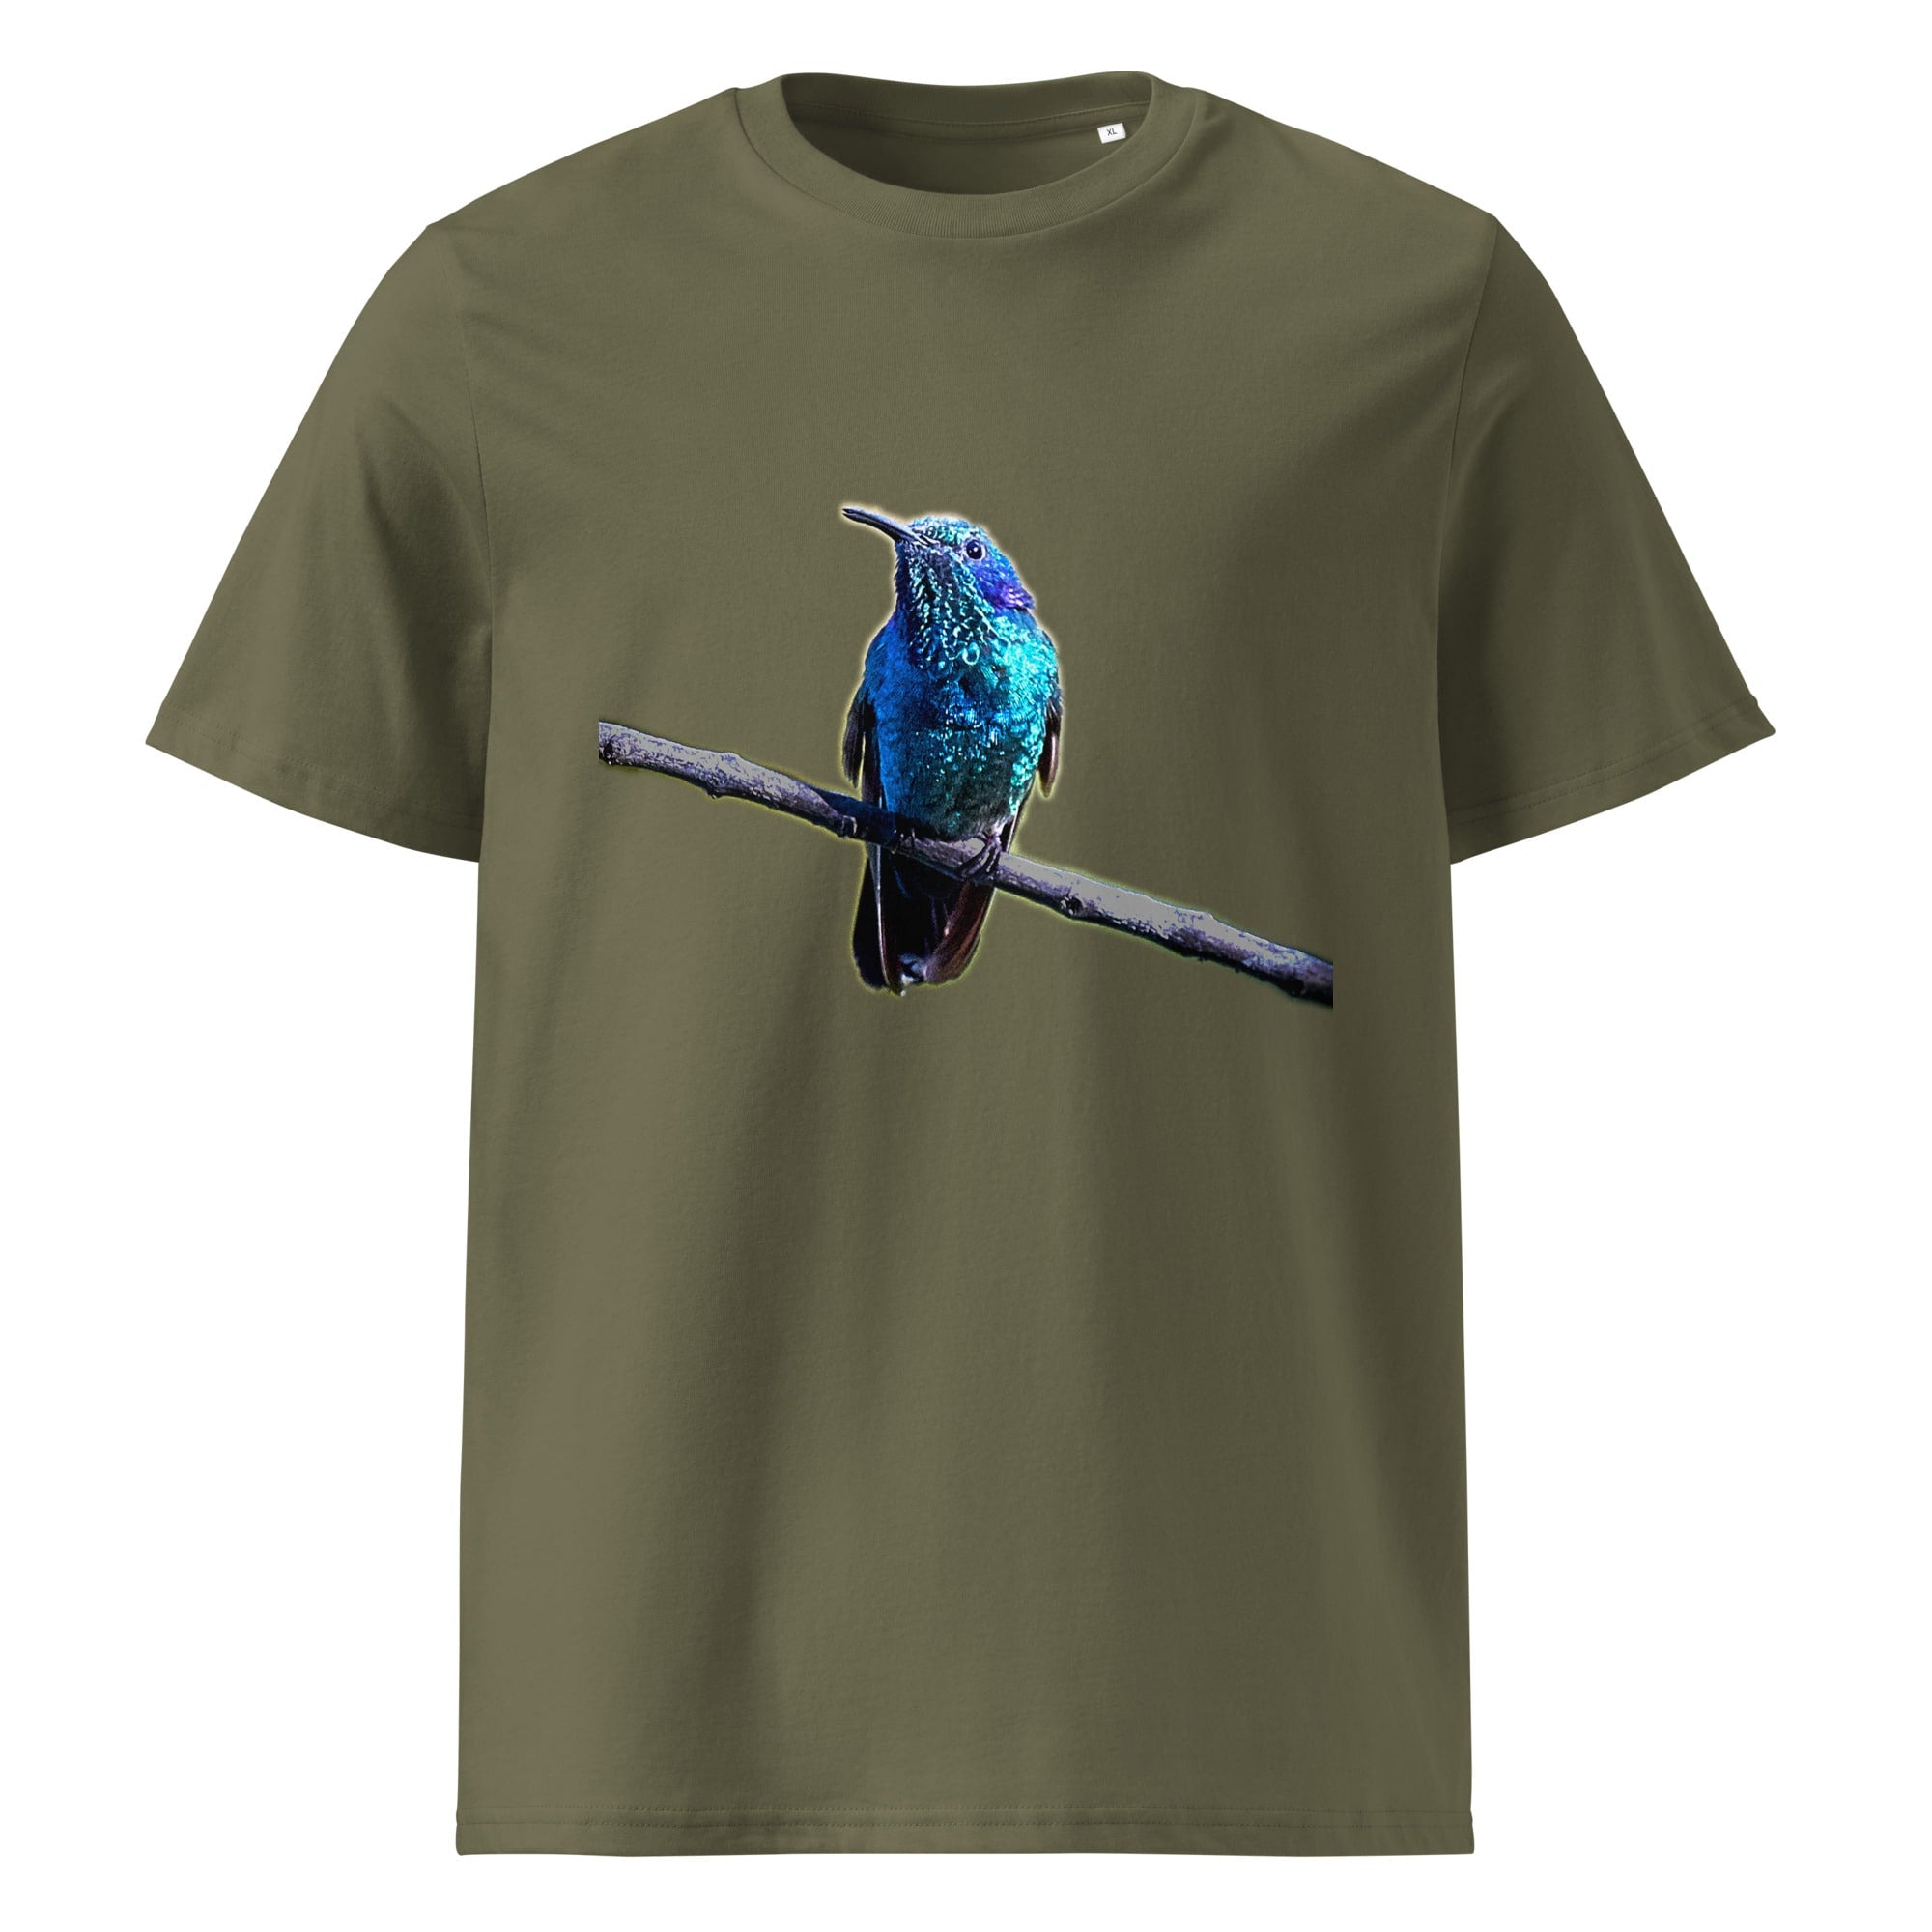 ein Damen T-Shirt mit Vogel-Motiv als Fotodruck eines Kolibris